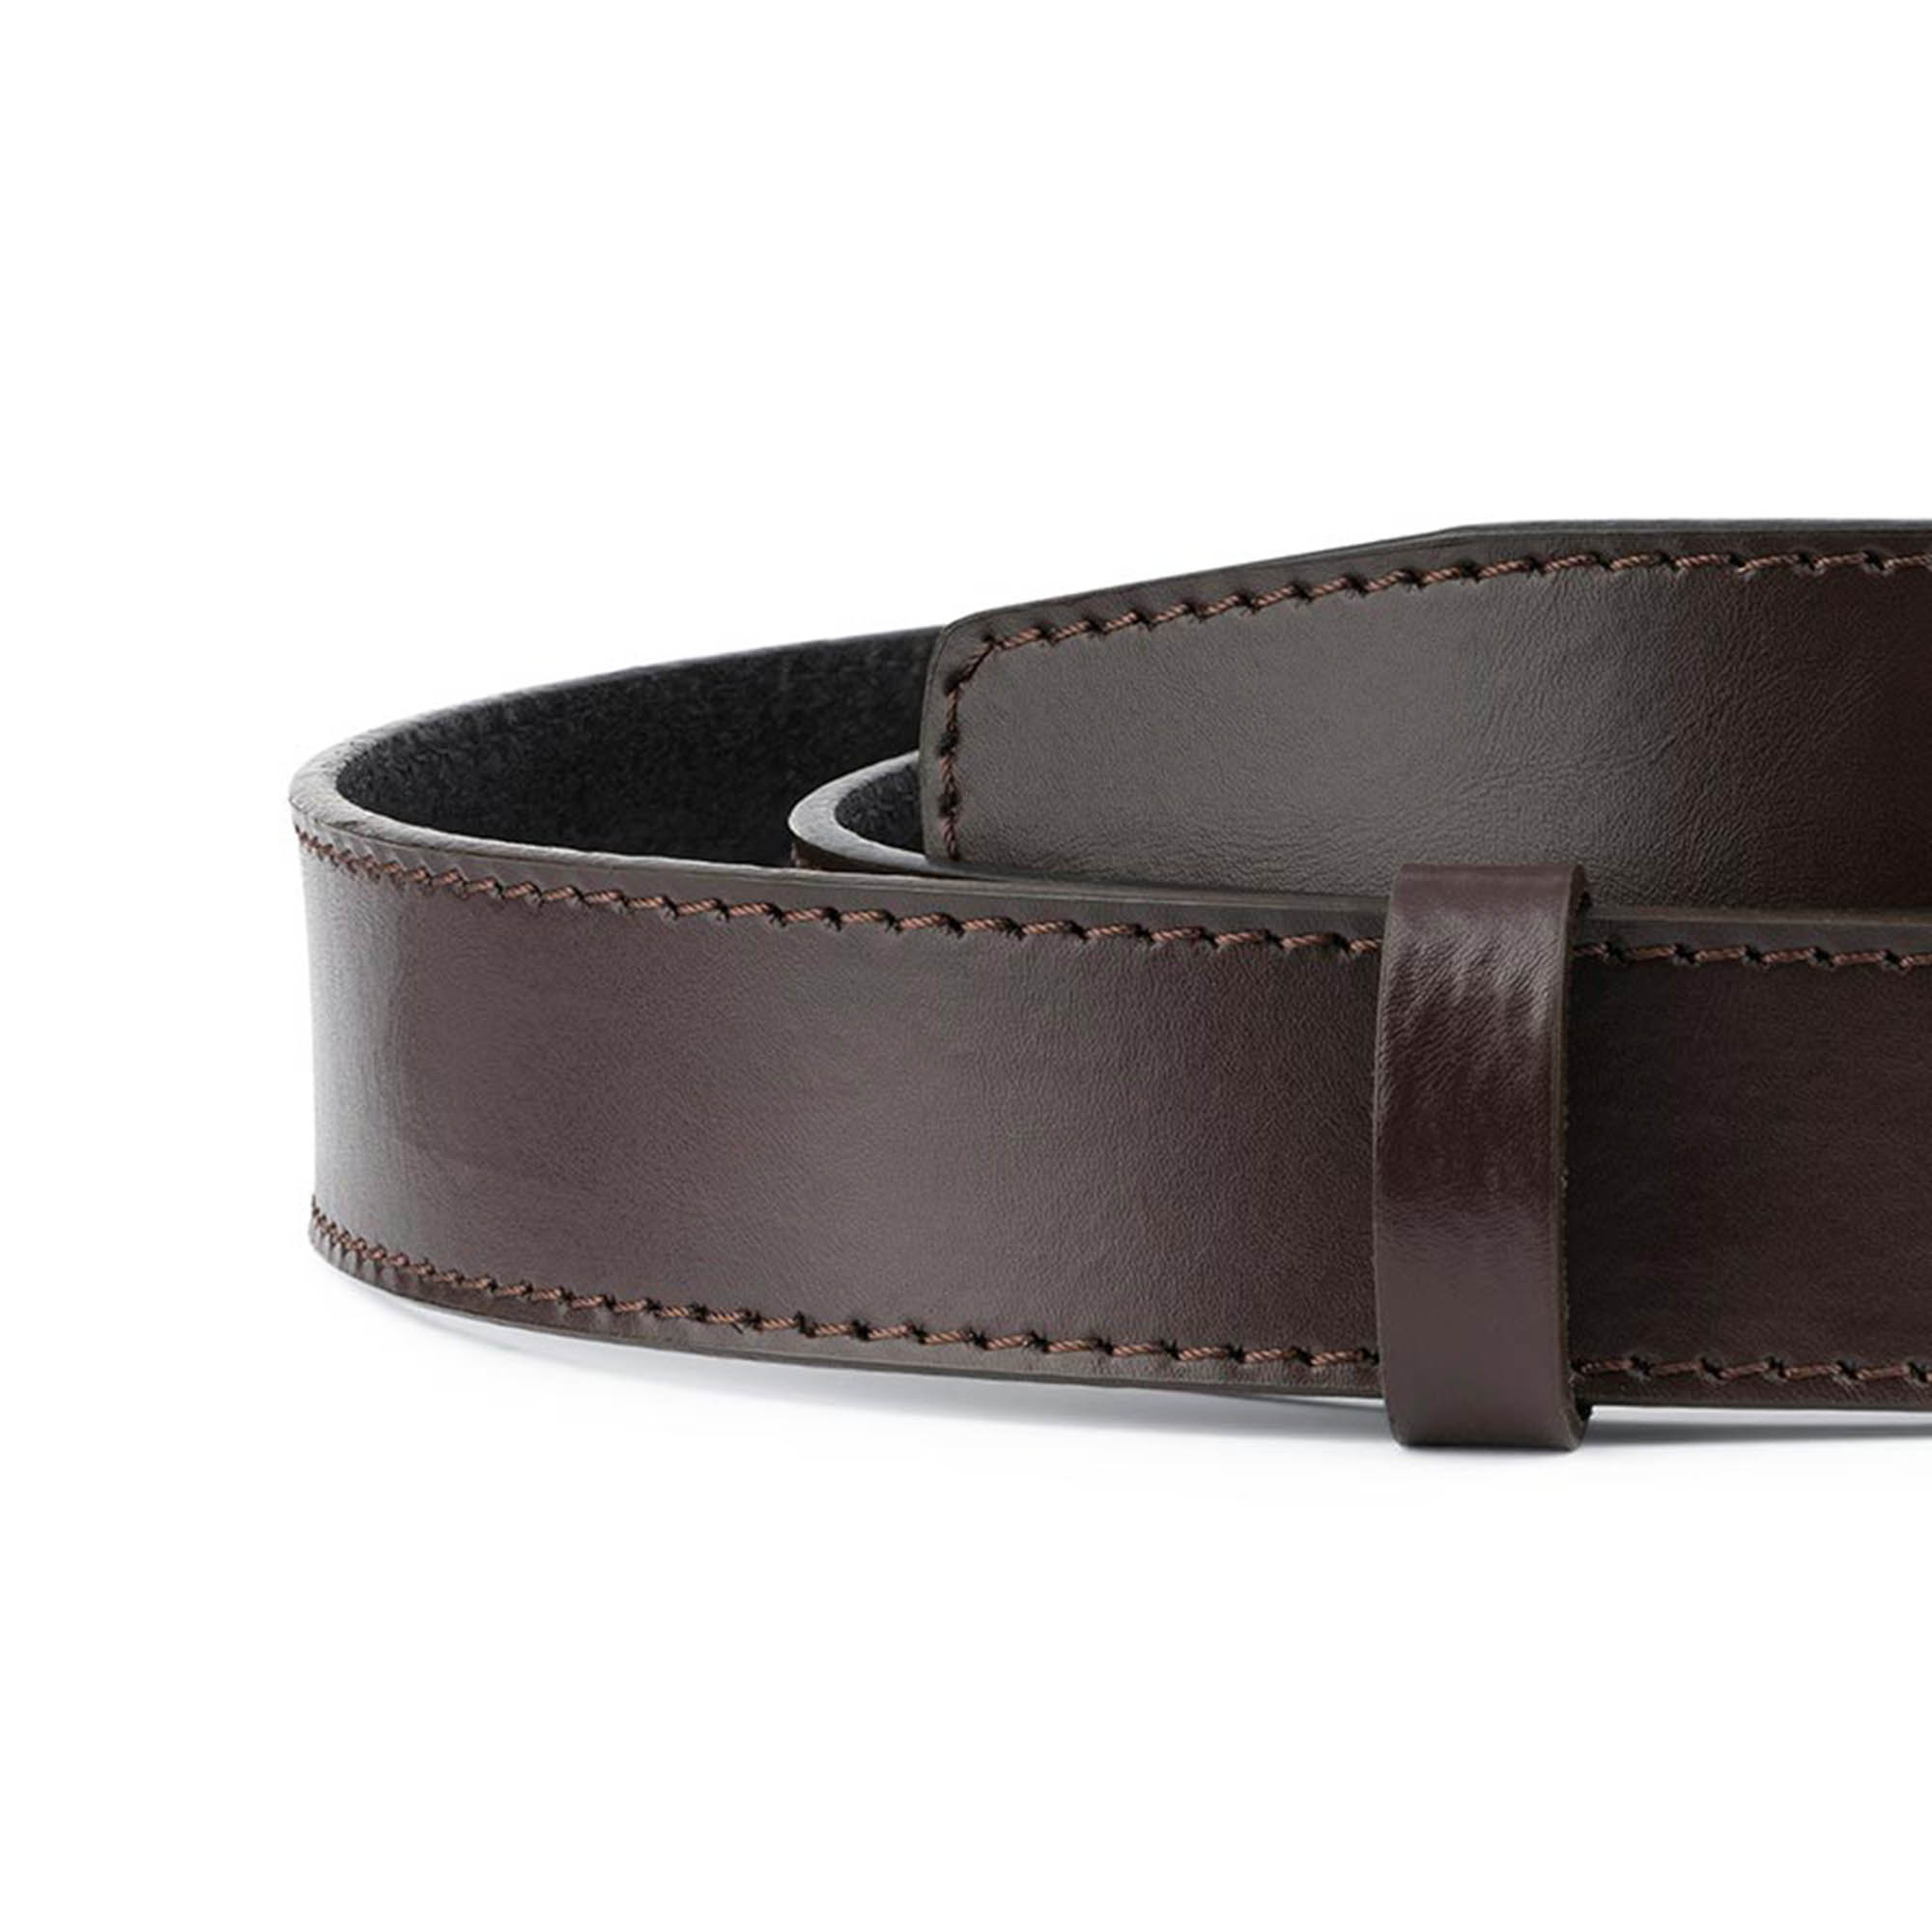 Leather Belt Strap - Men's Ratchet Belt - Black Vegetable Tanned